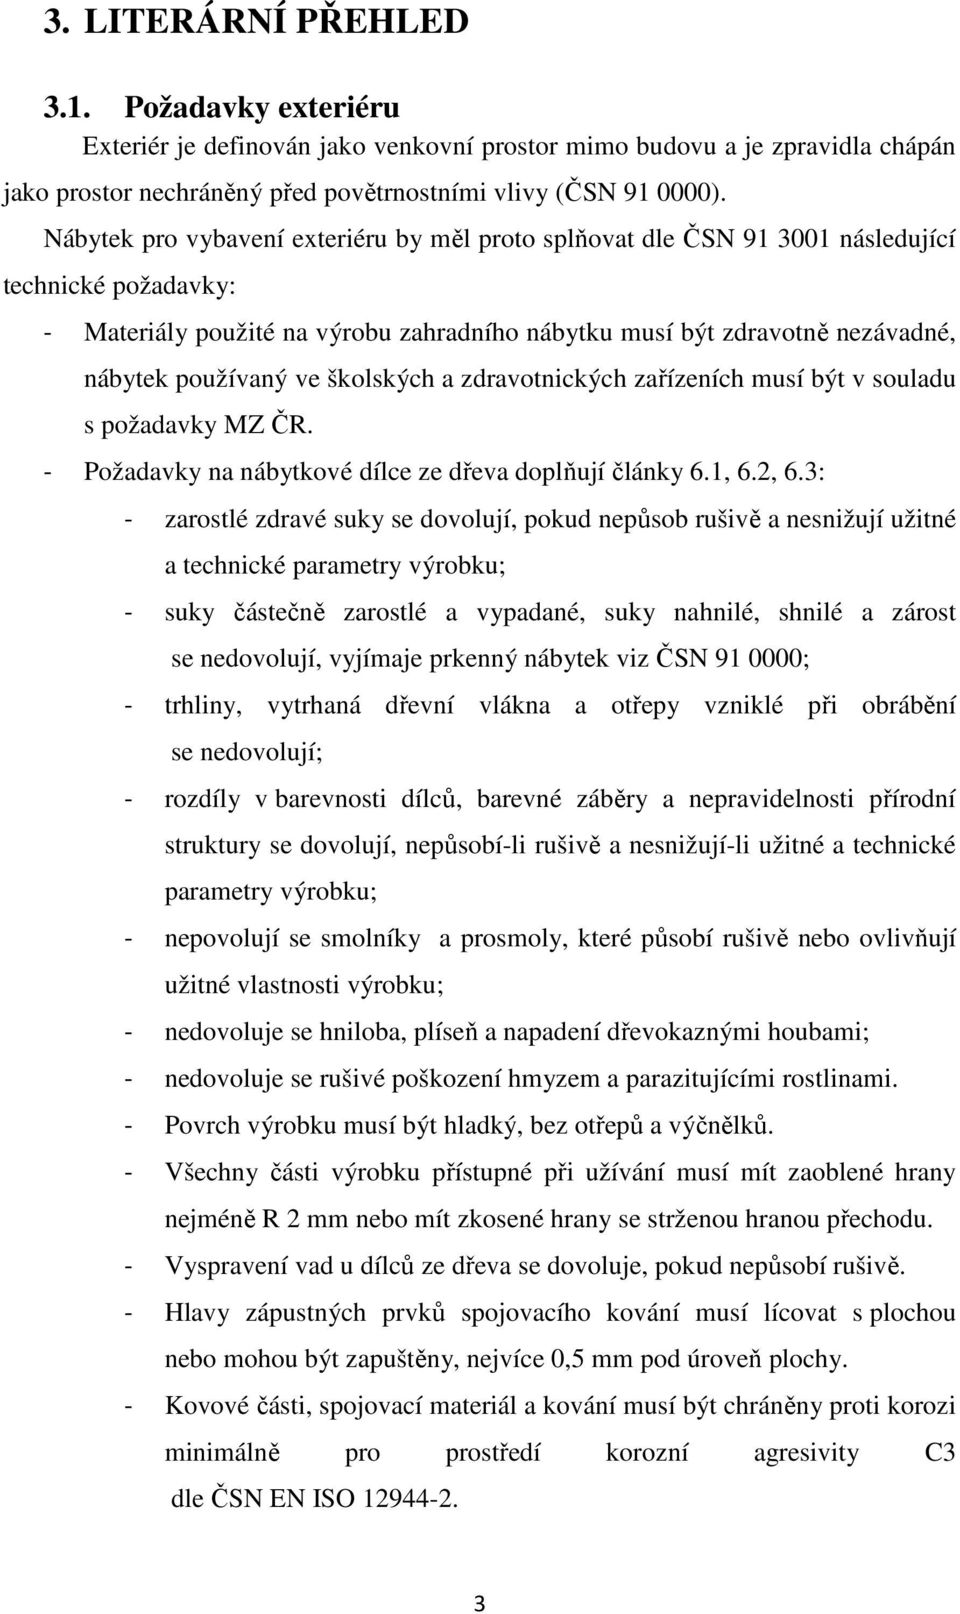 ve školských a zdravotnických zařízeních musí být v souladu s požadavky MZ ČR. - Požadavky na nábytkové dílce ze dřeva doplňují články 6.1, 6.2, 6.